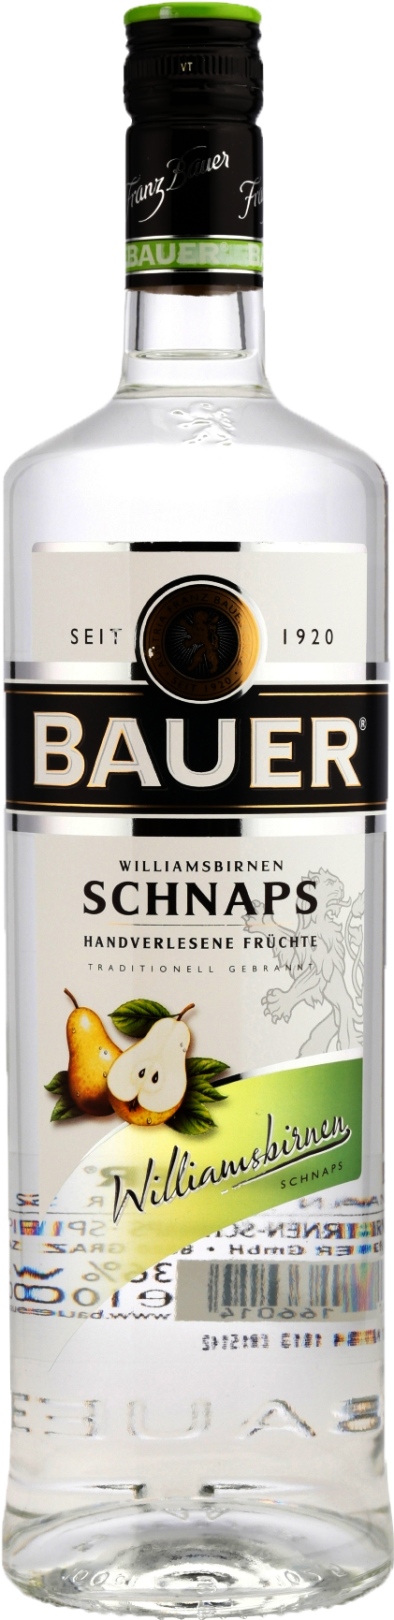 Bauer Williamsbirnen Schnaps